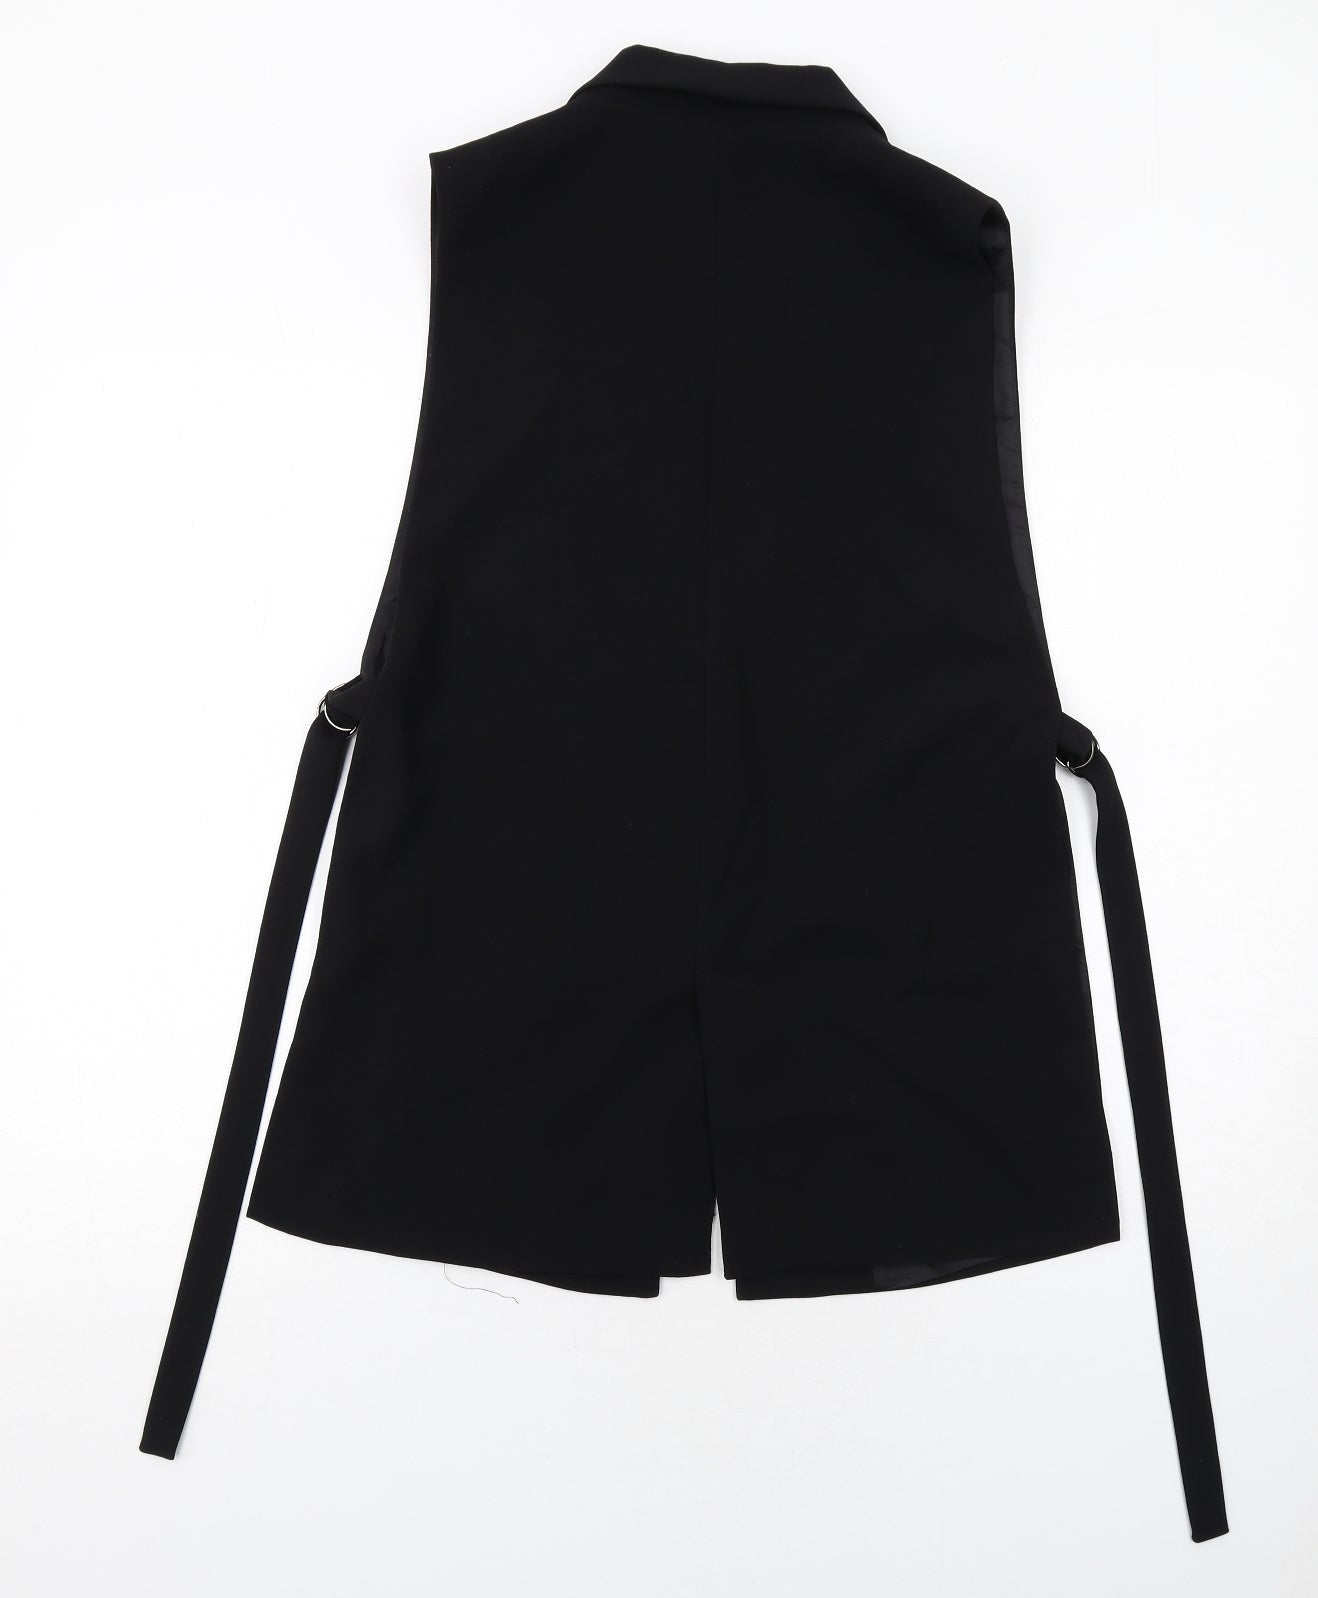 Zara Womens Black Jacket Waistcoat Size M Button - Longline Belted